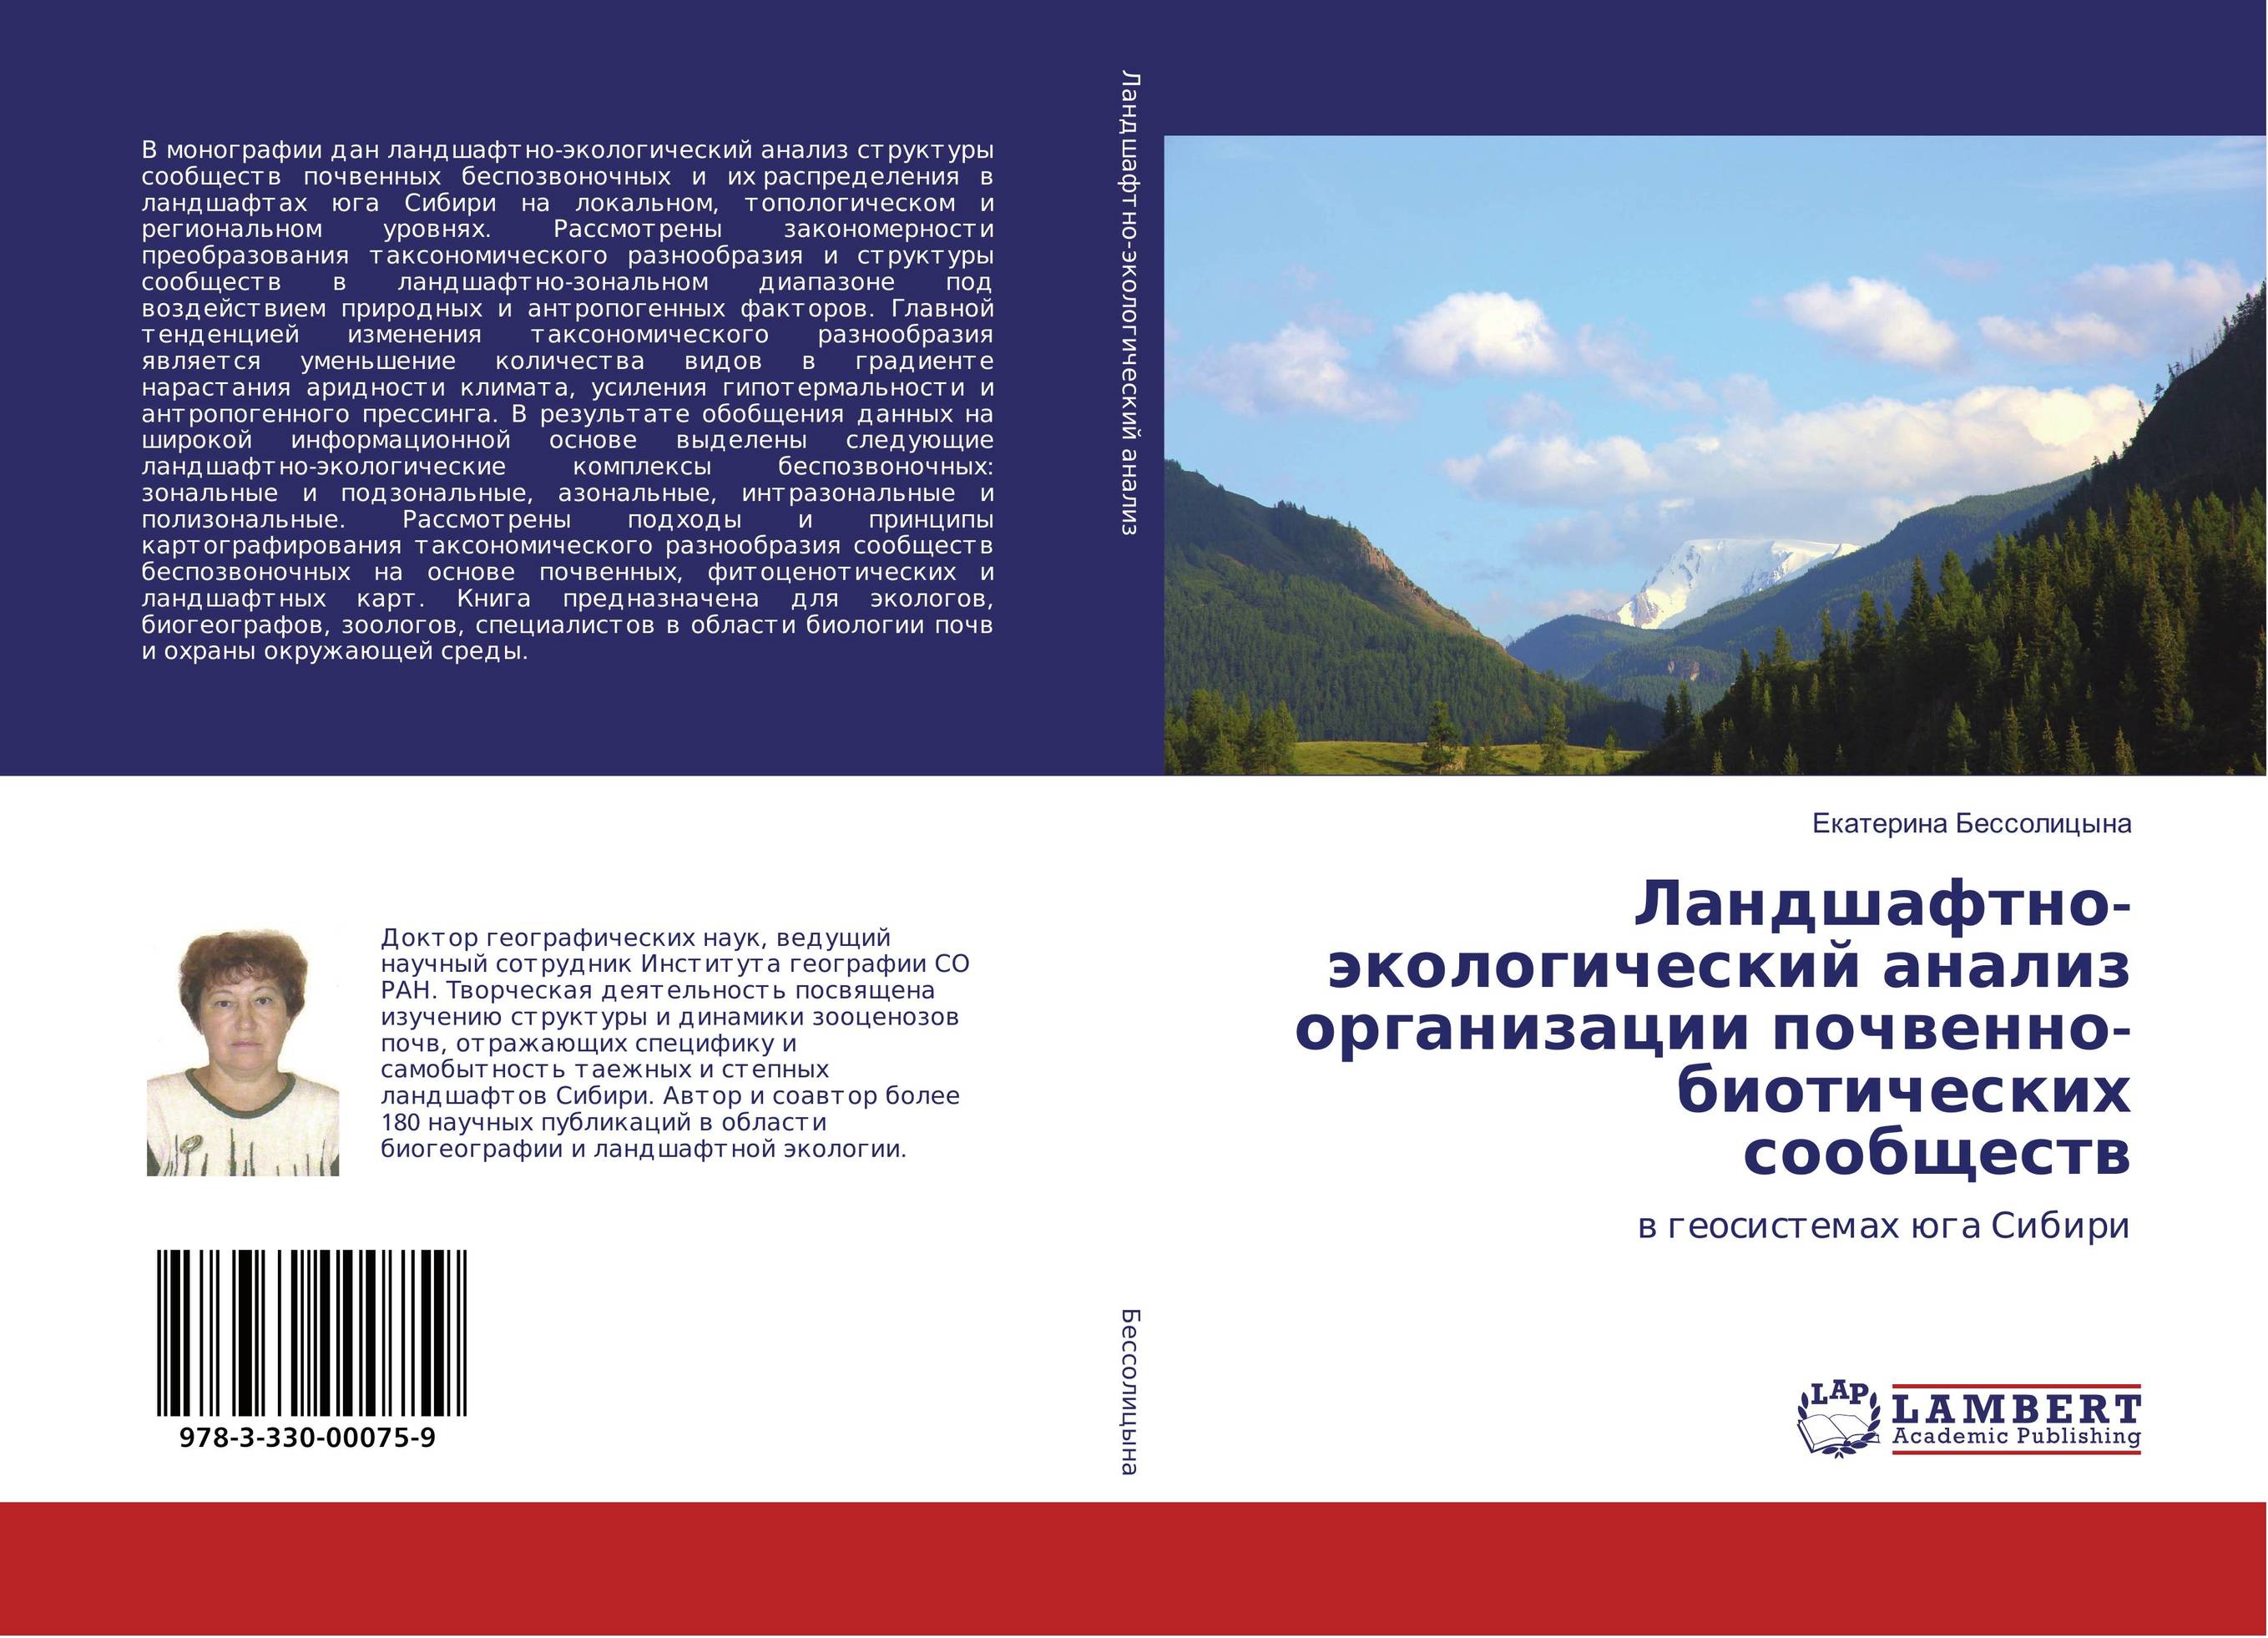 
        Ландшафтно-экологический анализ организации почвенно-биотических сообществ. В геосистемах юга Сибири.
      